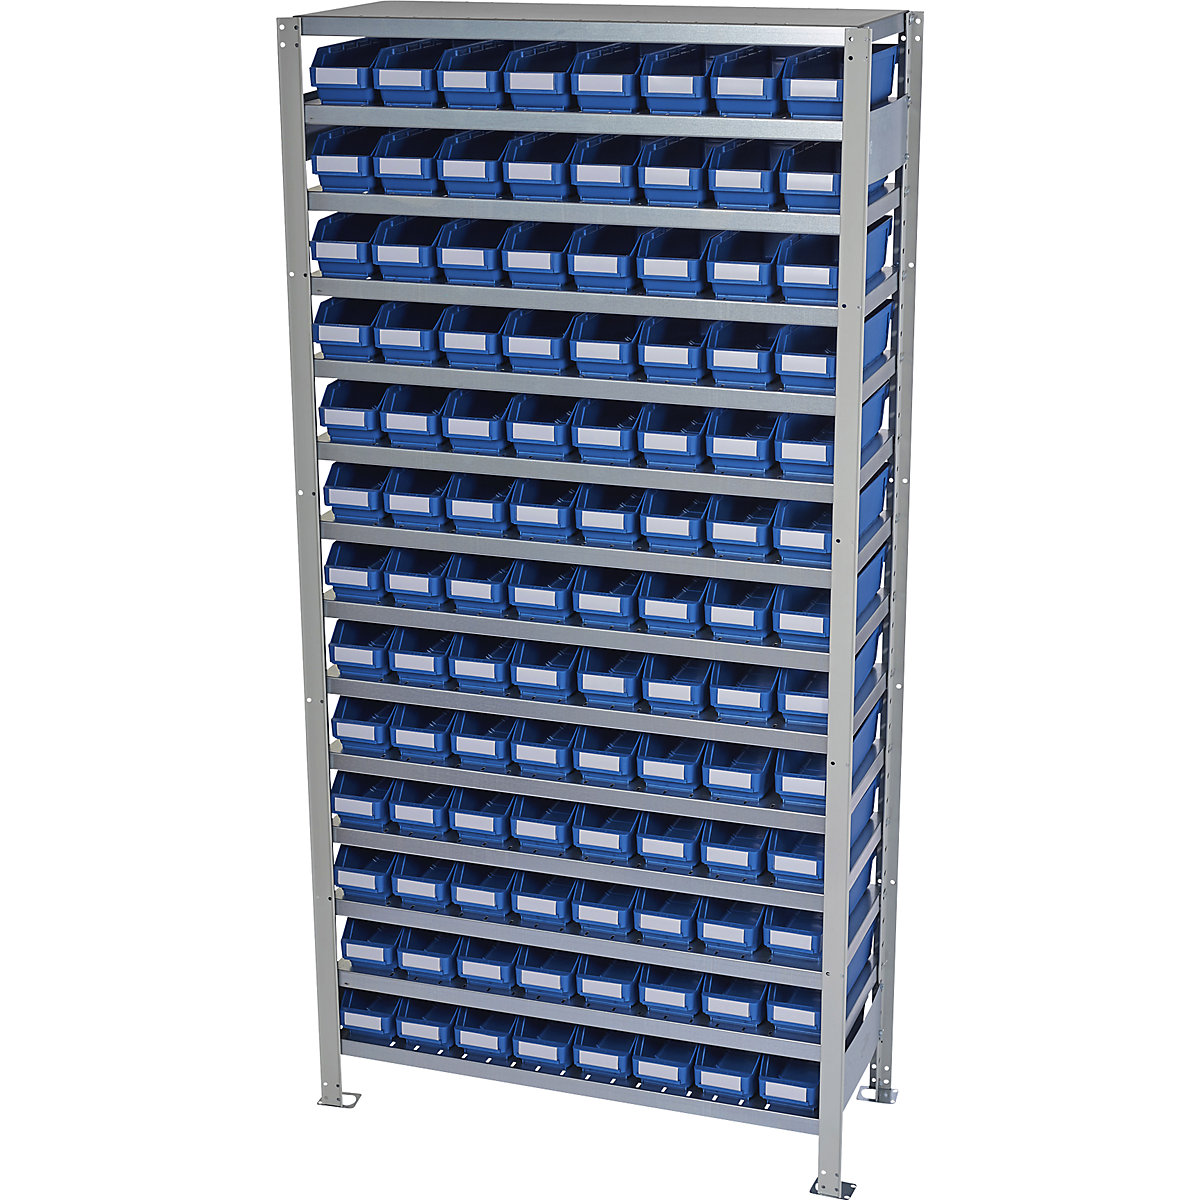 Összedugaszolós állvány dobozokkal – STEMO, állványmagasság 2100 mm, alapállvány, 300 mm mély, 104 kék doboz-32